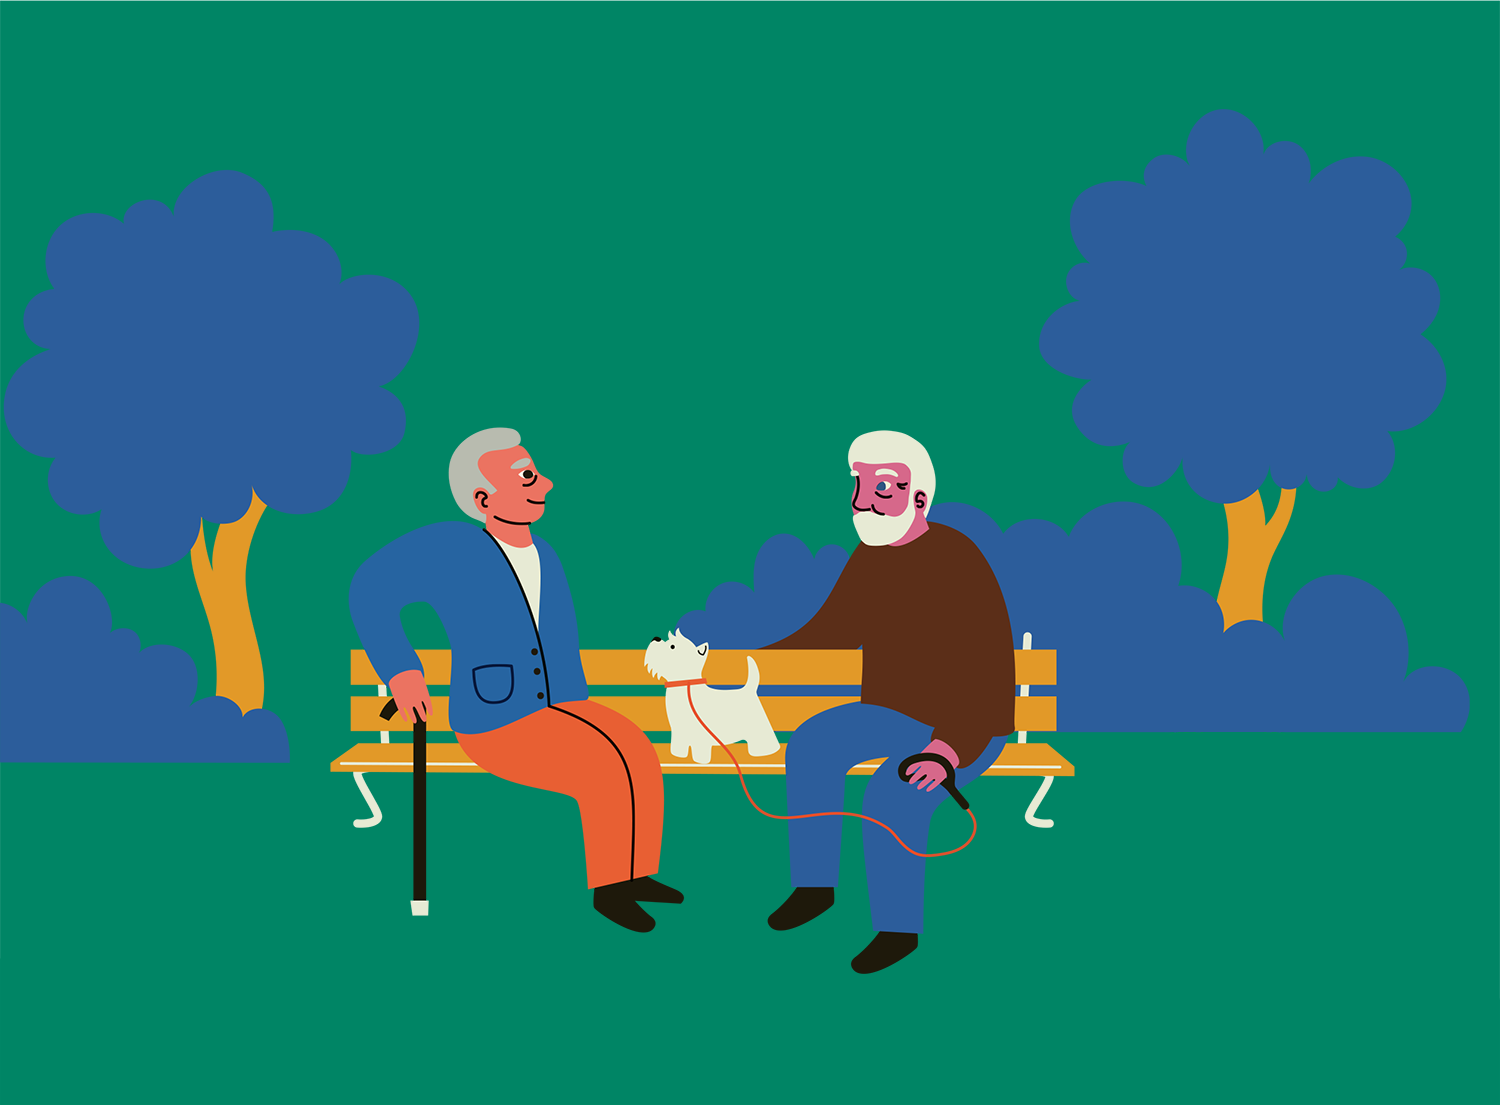 Piirroskuvassa kaksi ikäihmistä istuu puistonpenkillä.